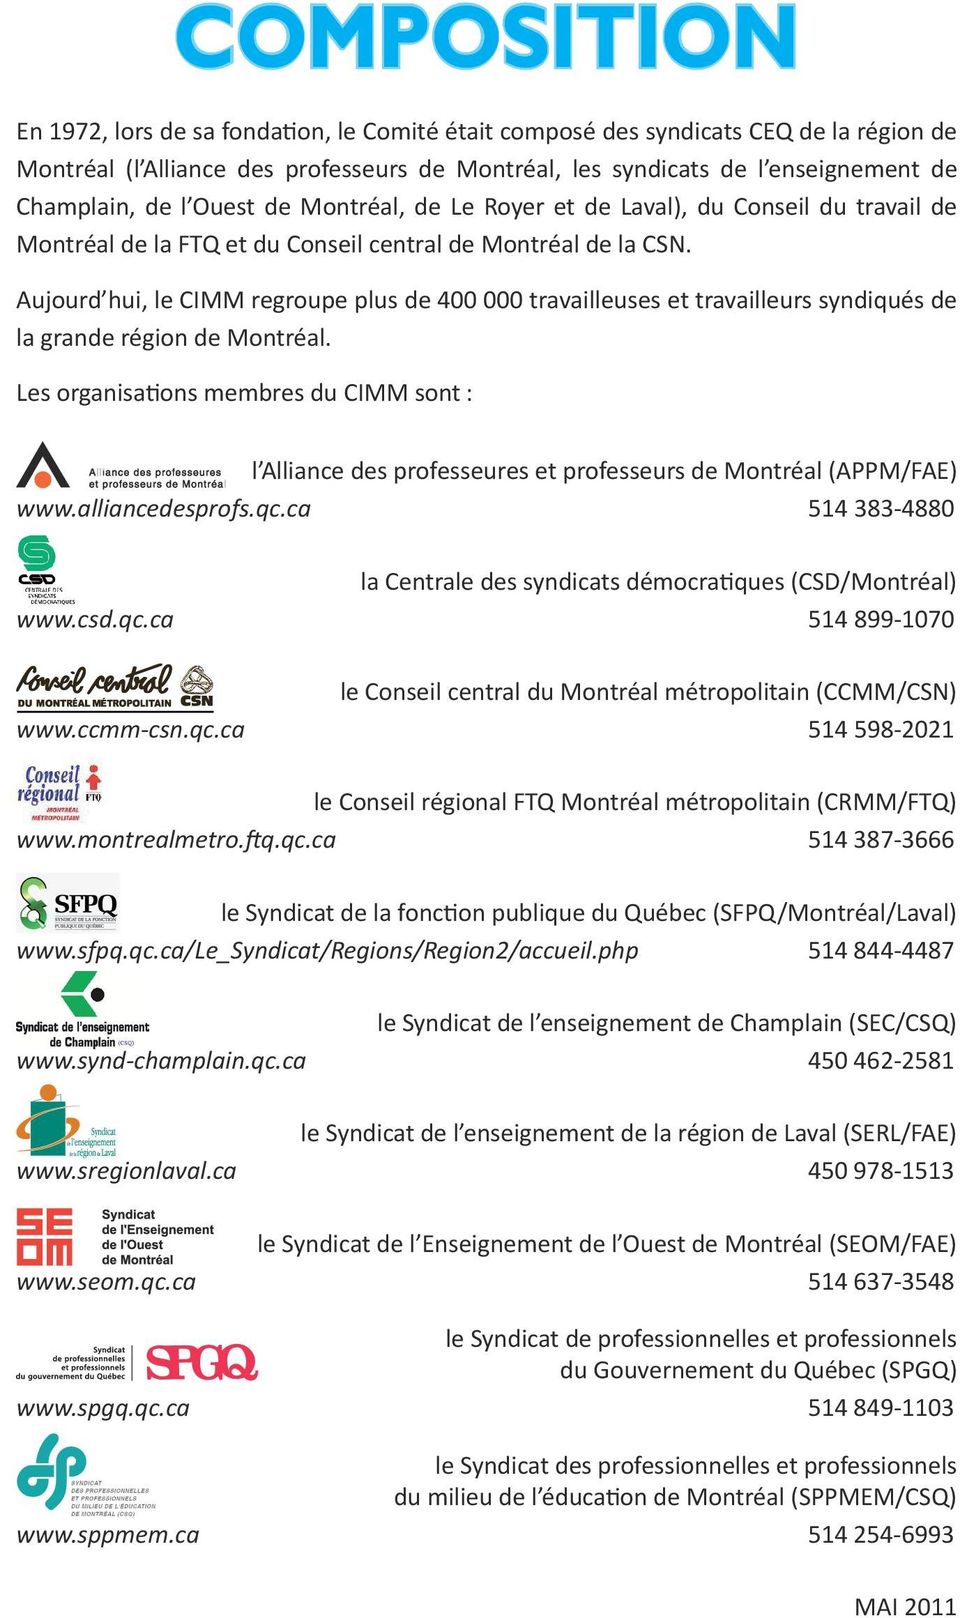 Aujourd hui, le CIMM regroupe plus de 400 000 travailleuses et travailleurs syndiqués de la grande région de Montréal.